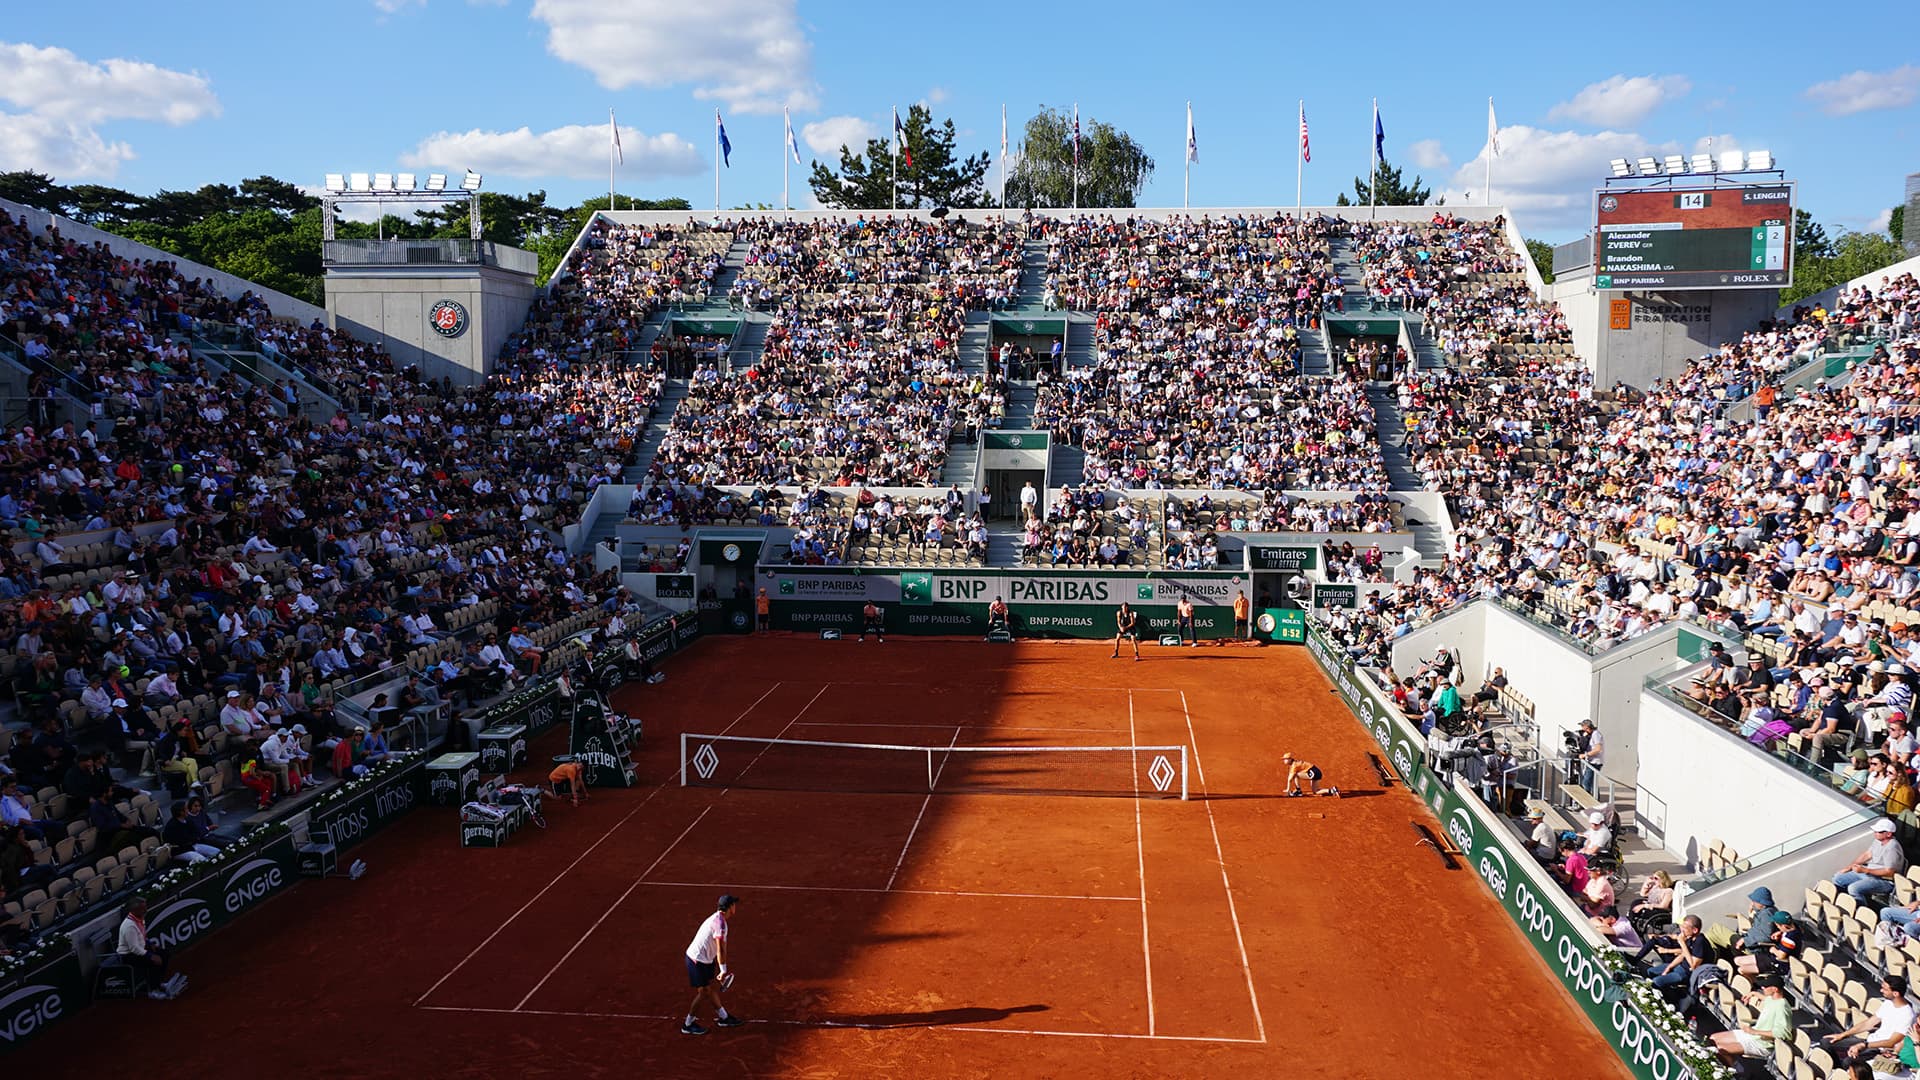 Court Suzanne Lenglen at Roland Garros